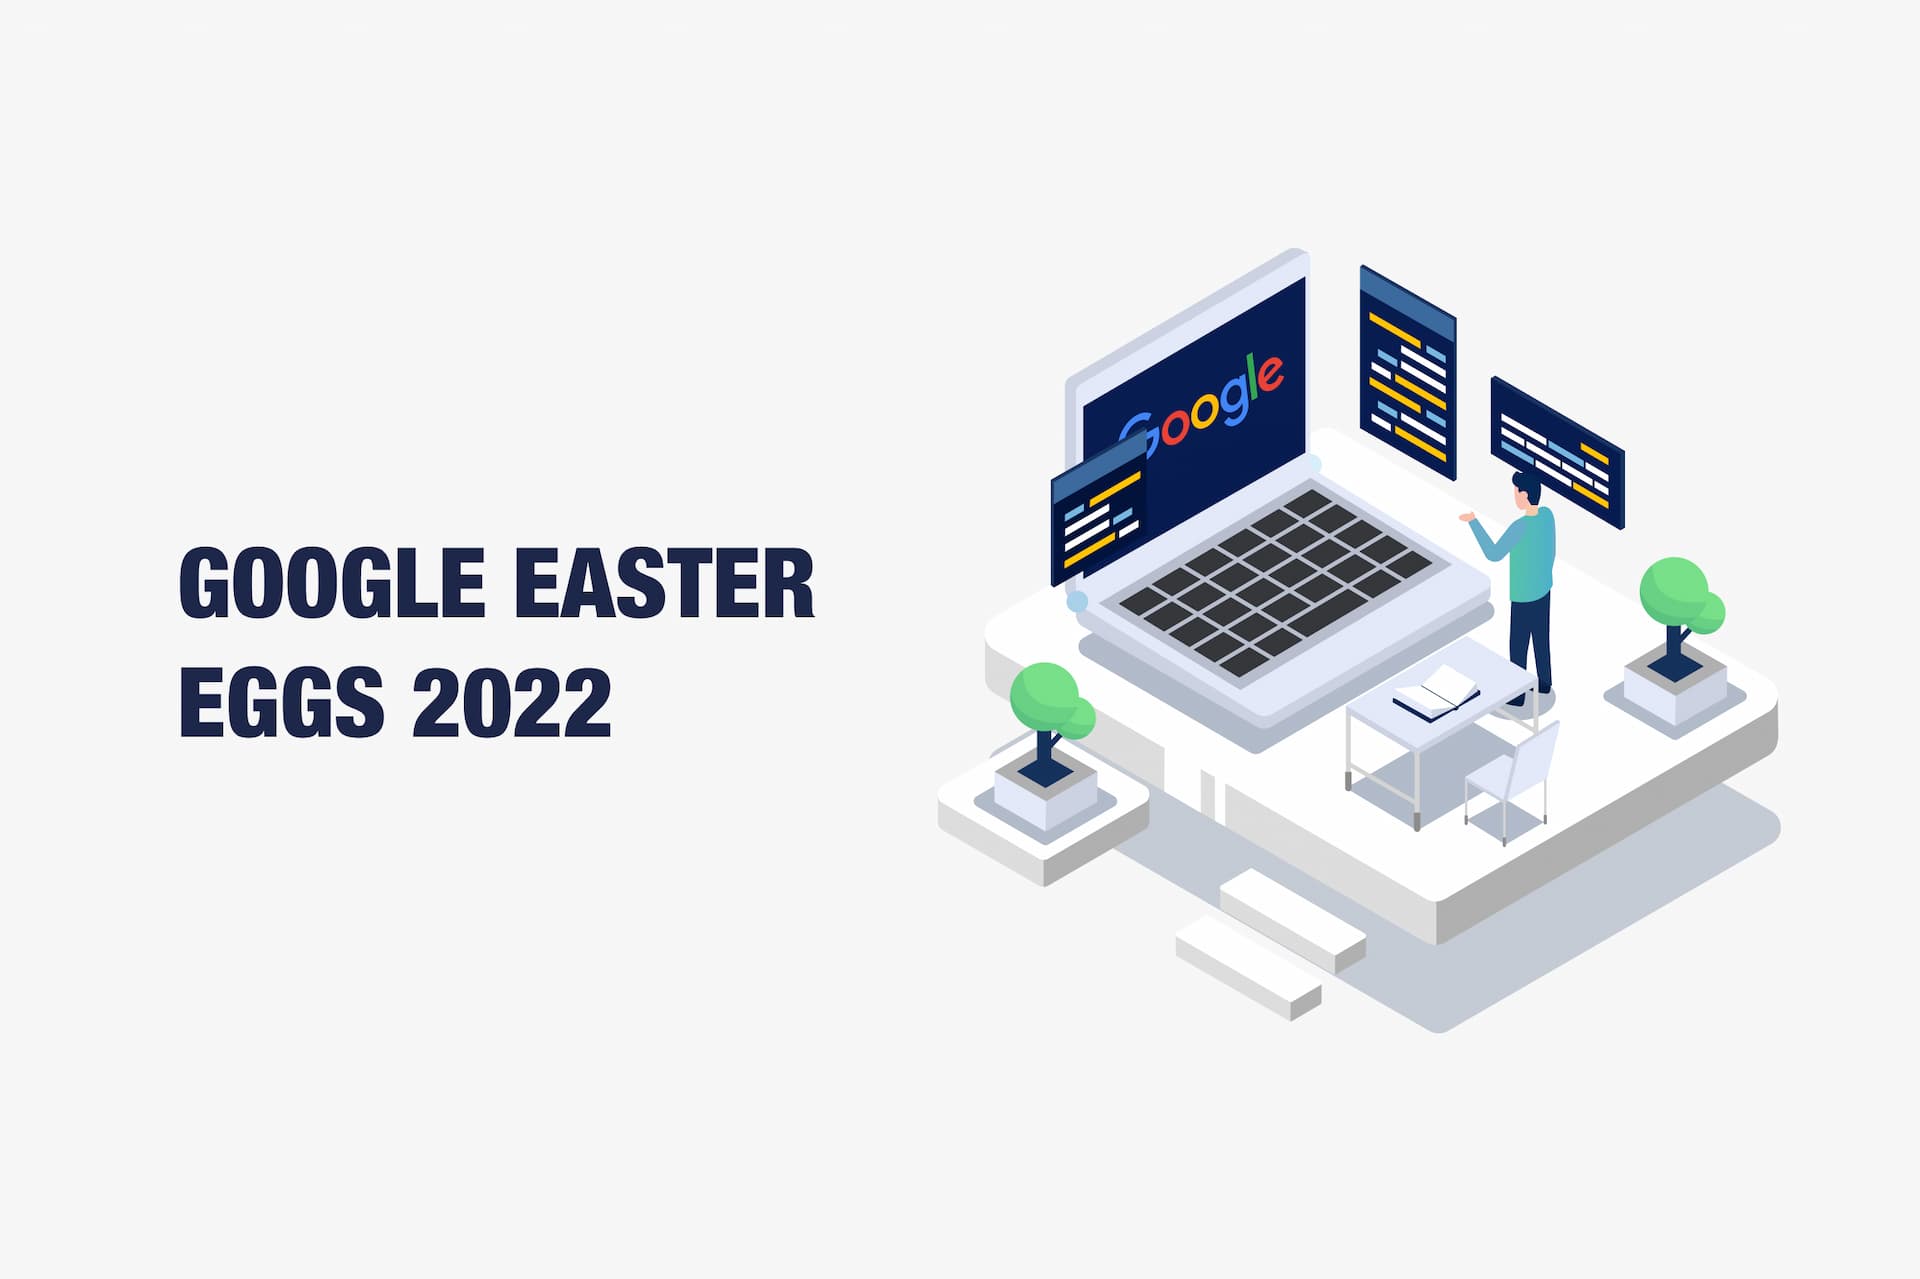 Google Easter Eggs 2022